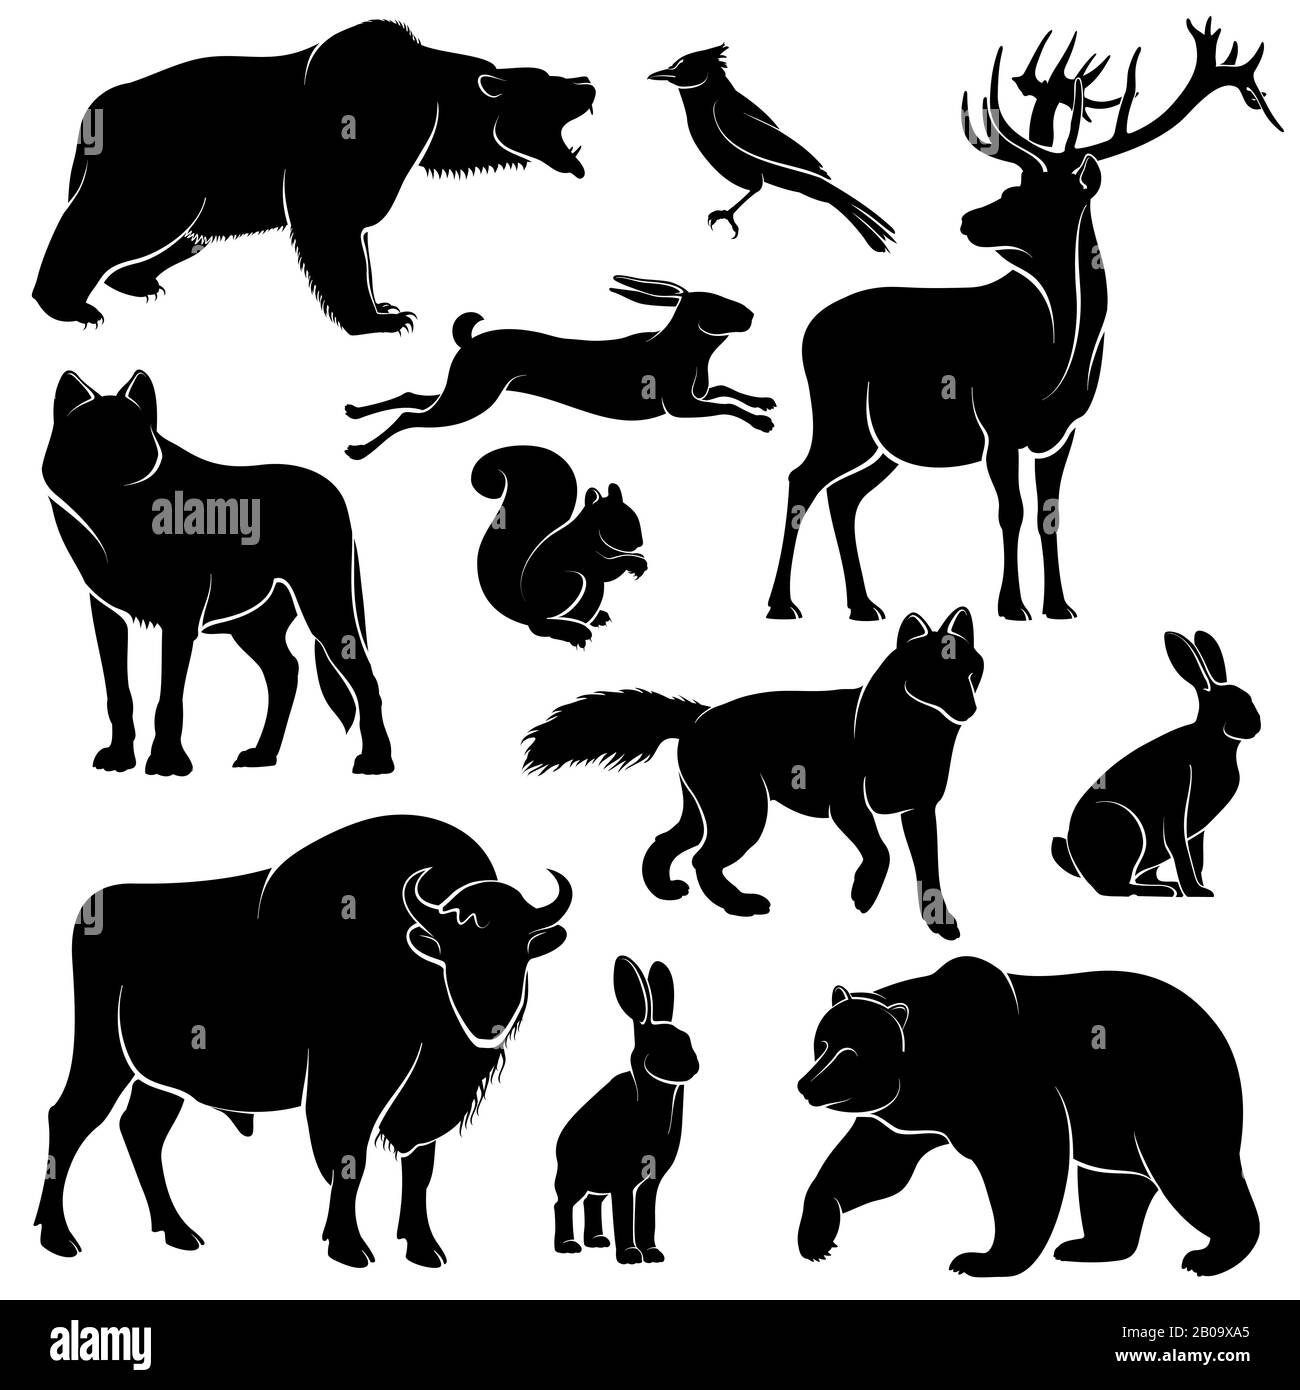 Animali di foresta vettoriale per disegno di legno. Raccolta zoologica animale mammifero selvatico, illustrazione di animale forestale Illustrazione Vettoriale